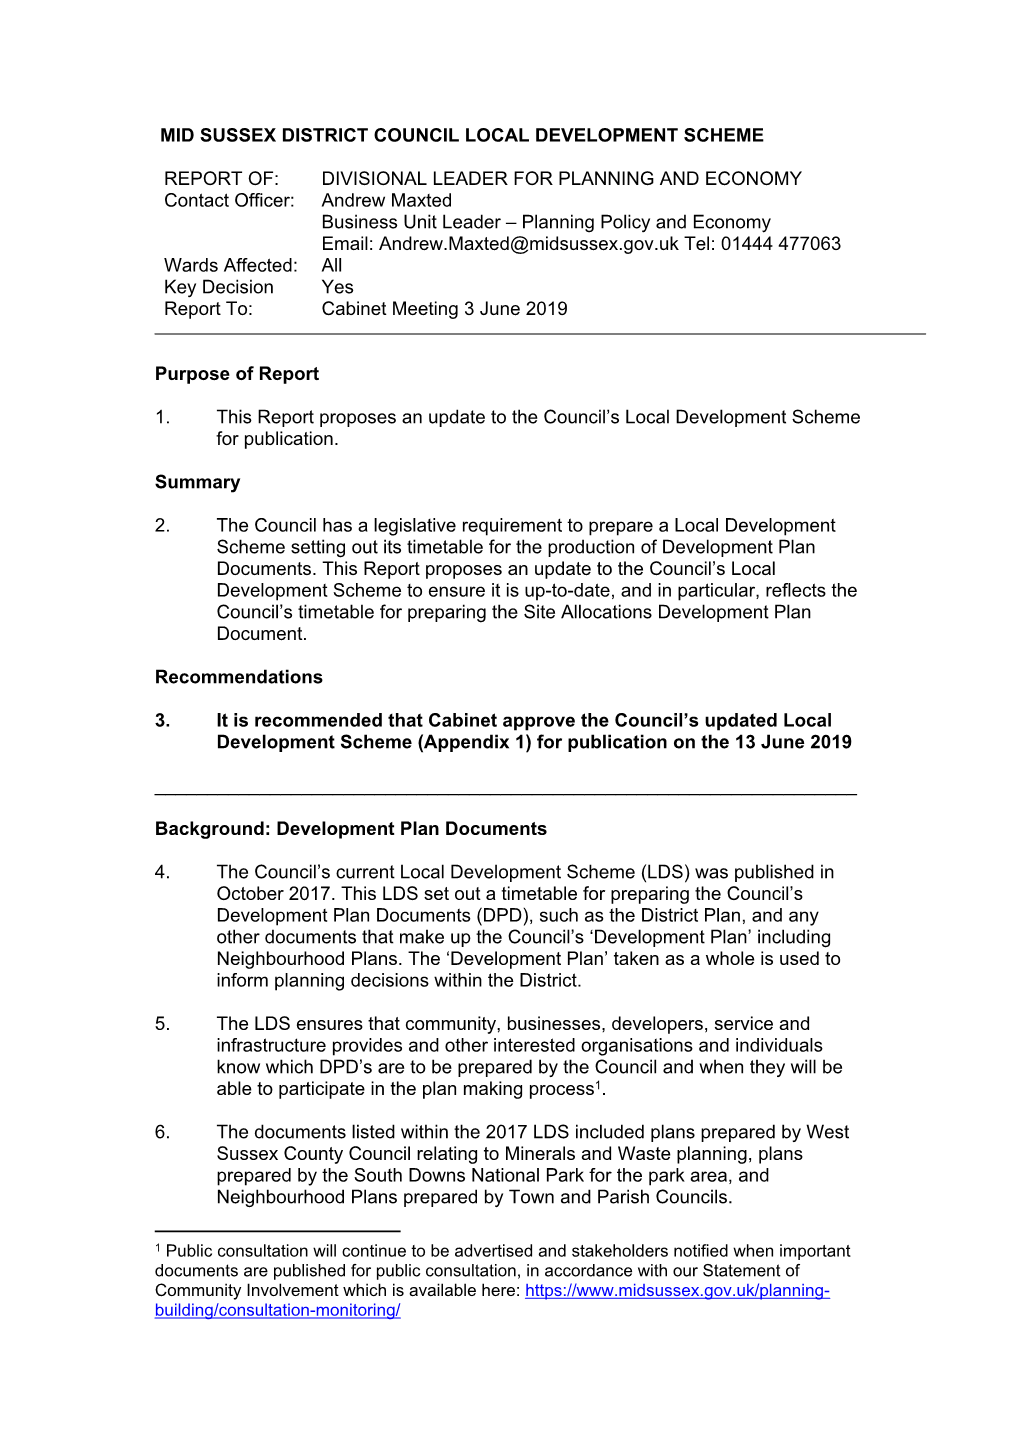 Mid Sussex District Council Local Development Scheme